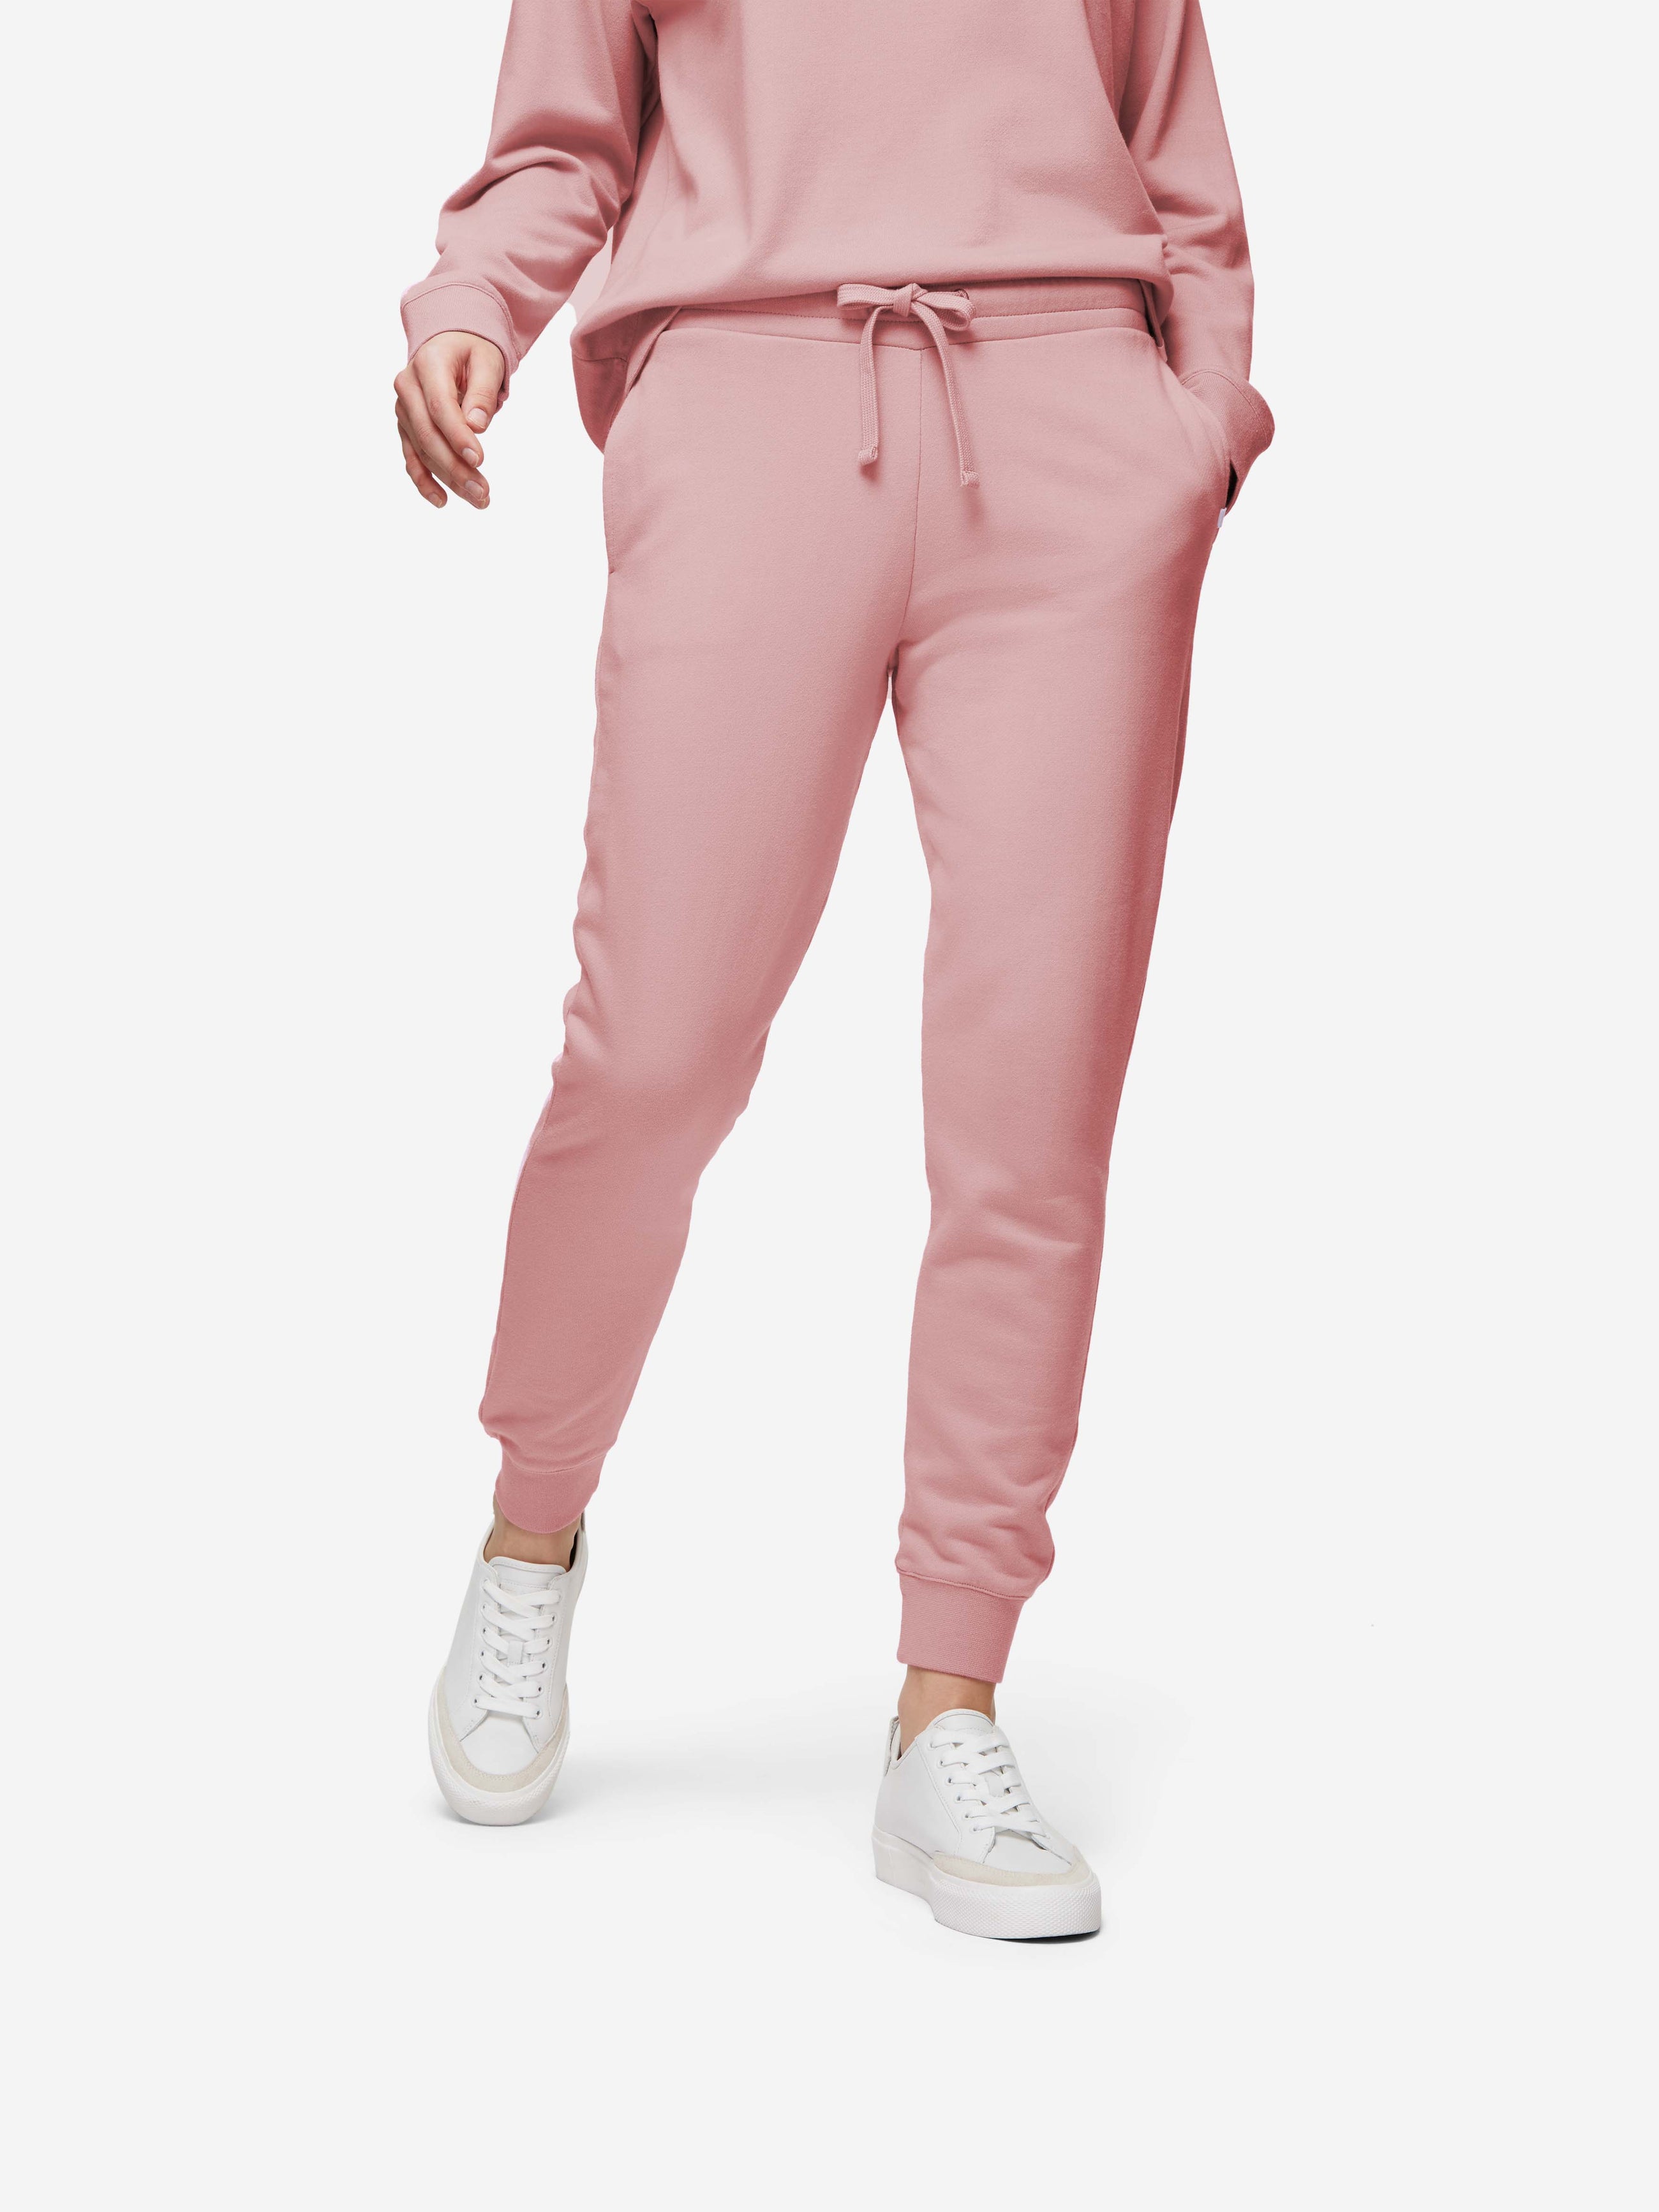 Cotton-blend Sweatpants - Pink - Ladies